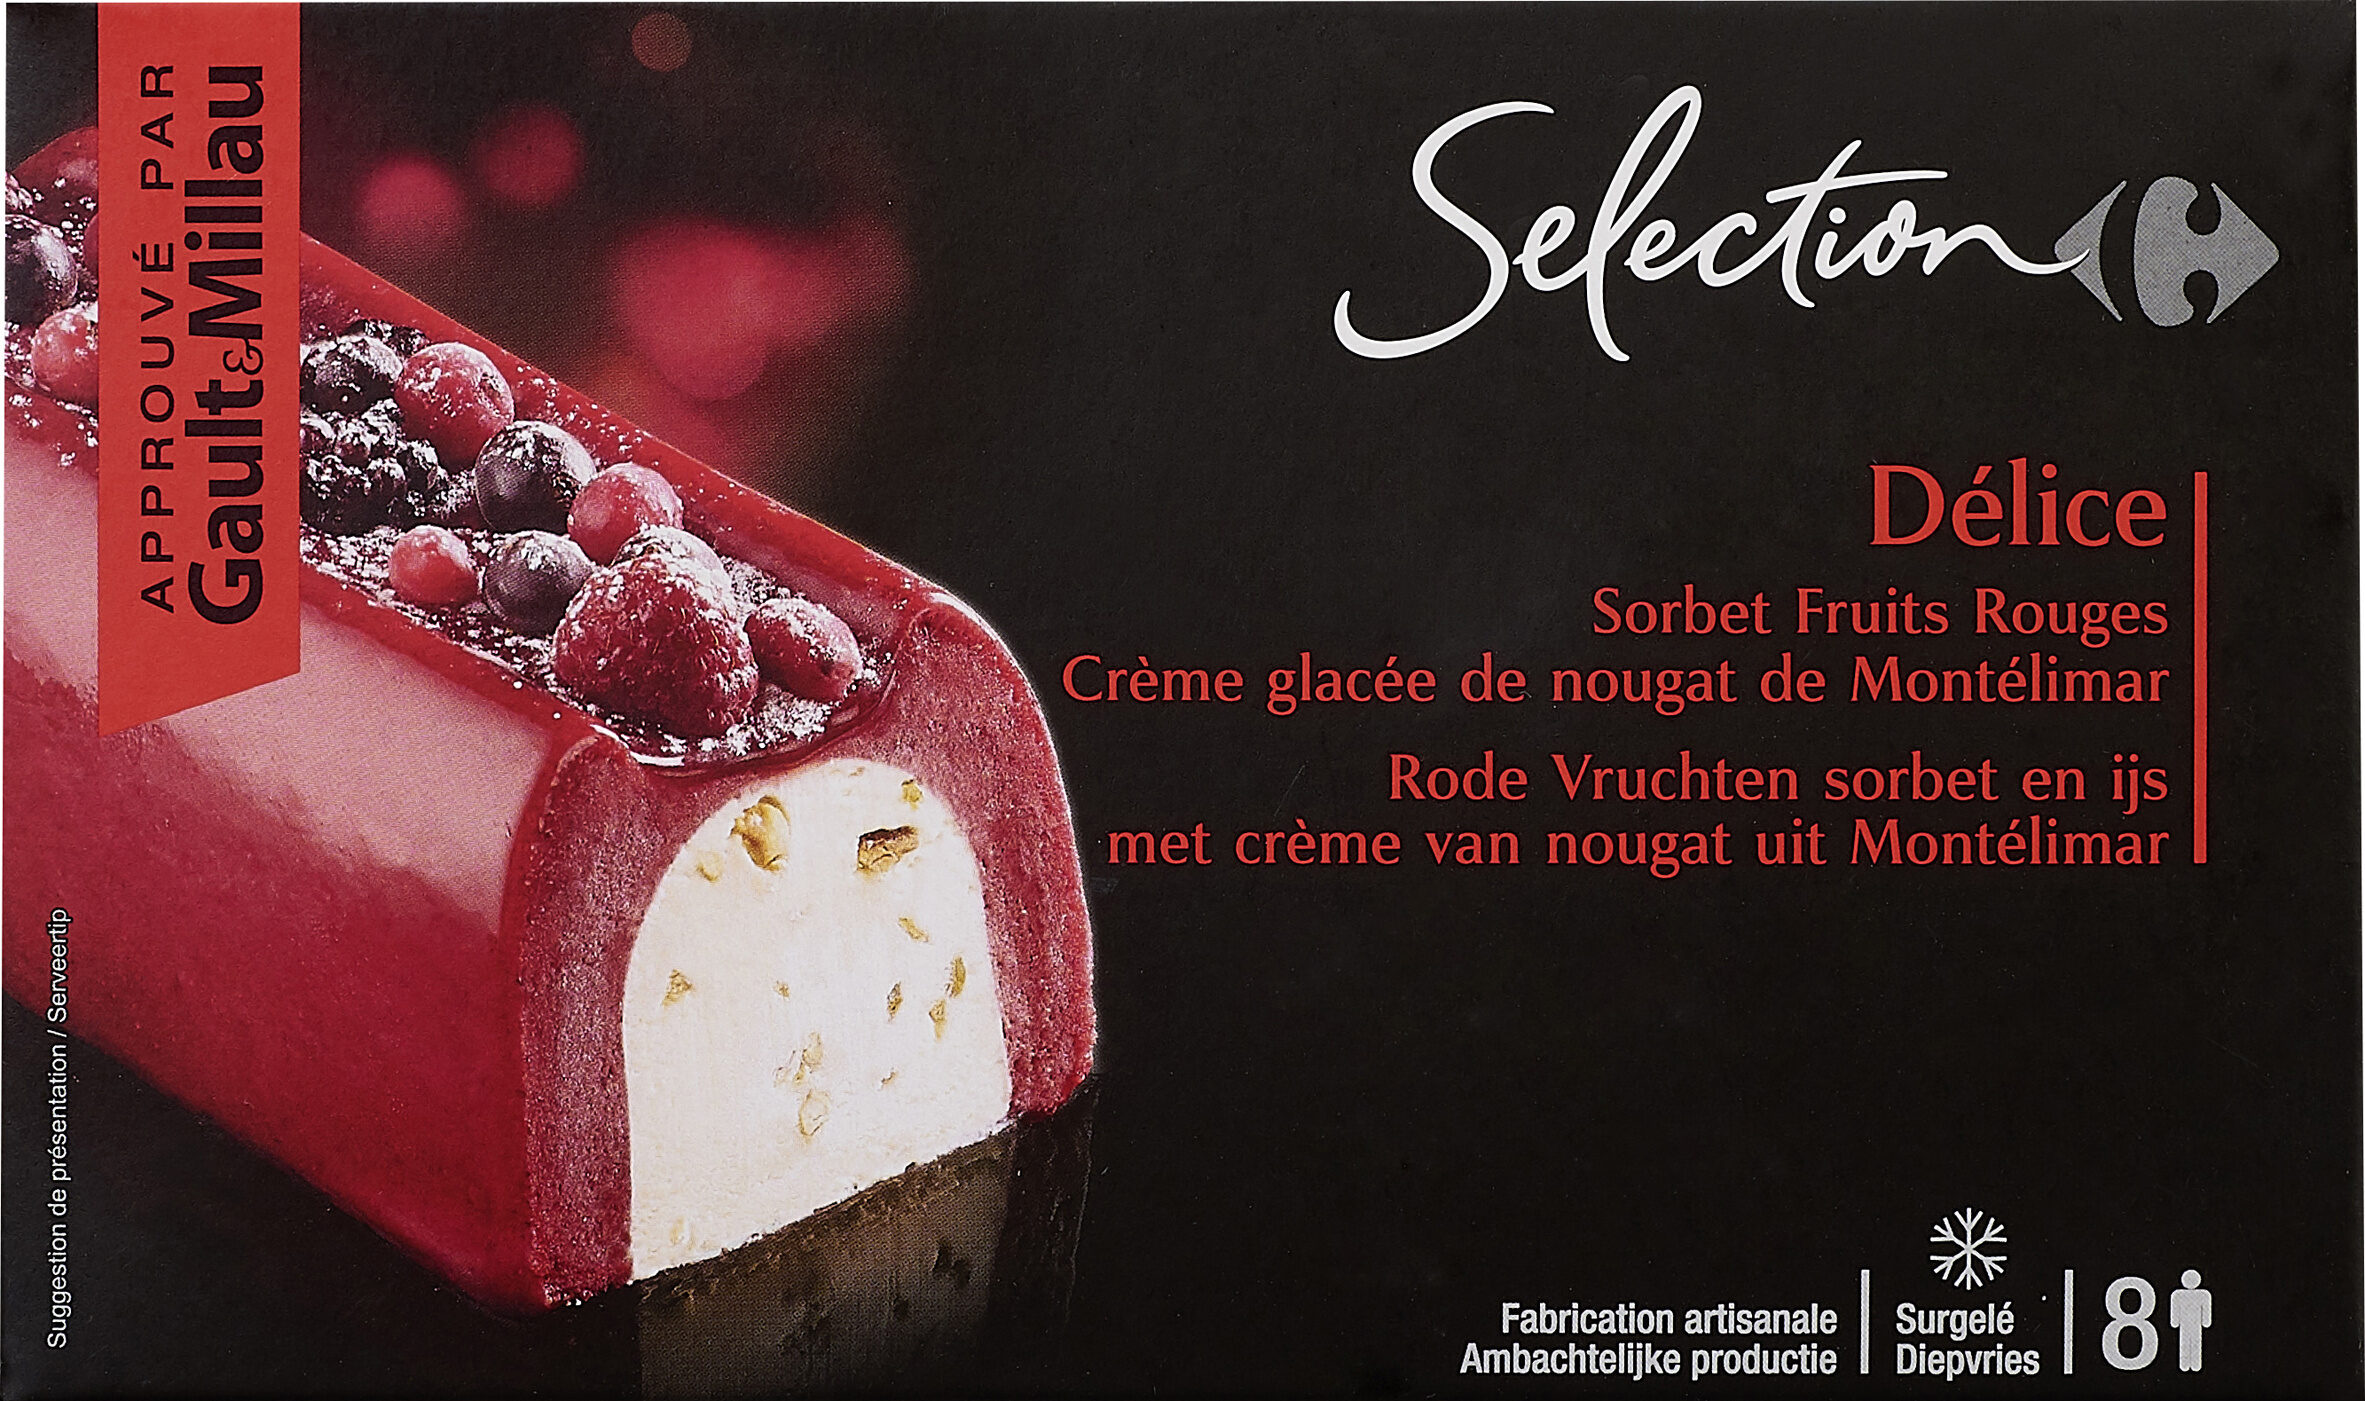 Délice Sorbet fruits rouges au crème glacée nougat de Montélimar - Product - fr